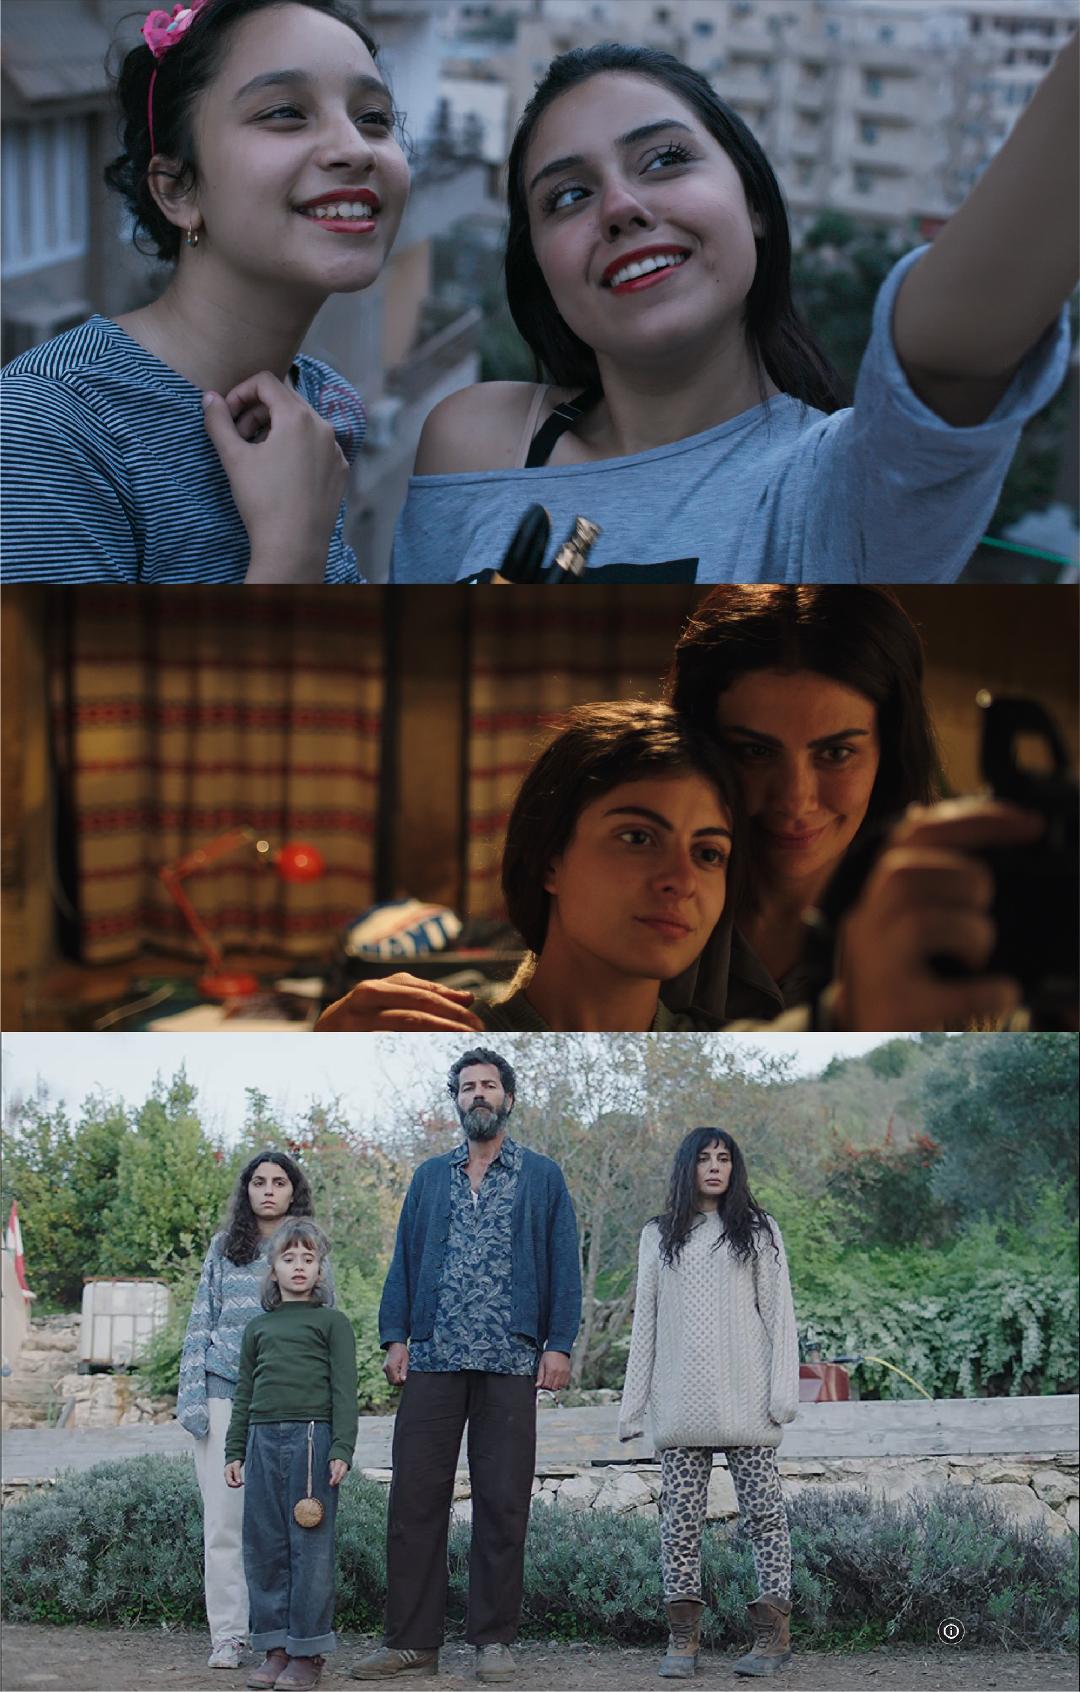 مصر والأردن ولبنان، تأهلت 3 أفلام من إنتاج أو توزيع شركة فيلم كلينك لـجائزة الأوسكار لأفضل فيلم دولي روائي طويل لعام 2022 ( الأمة برس )